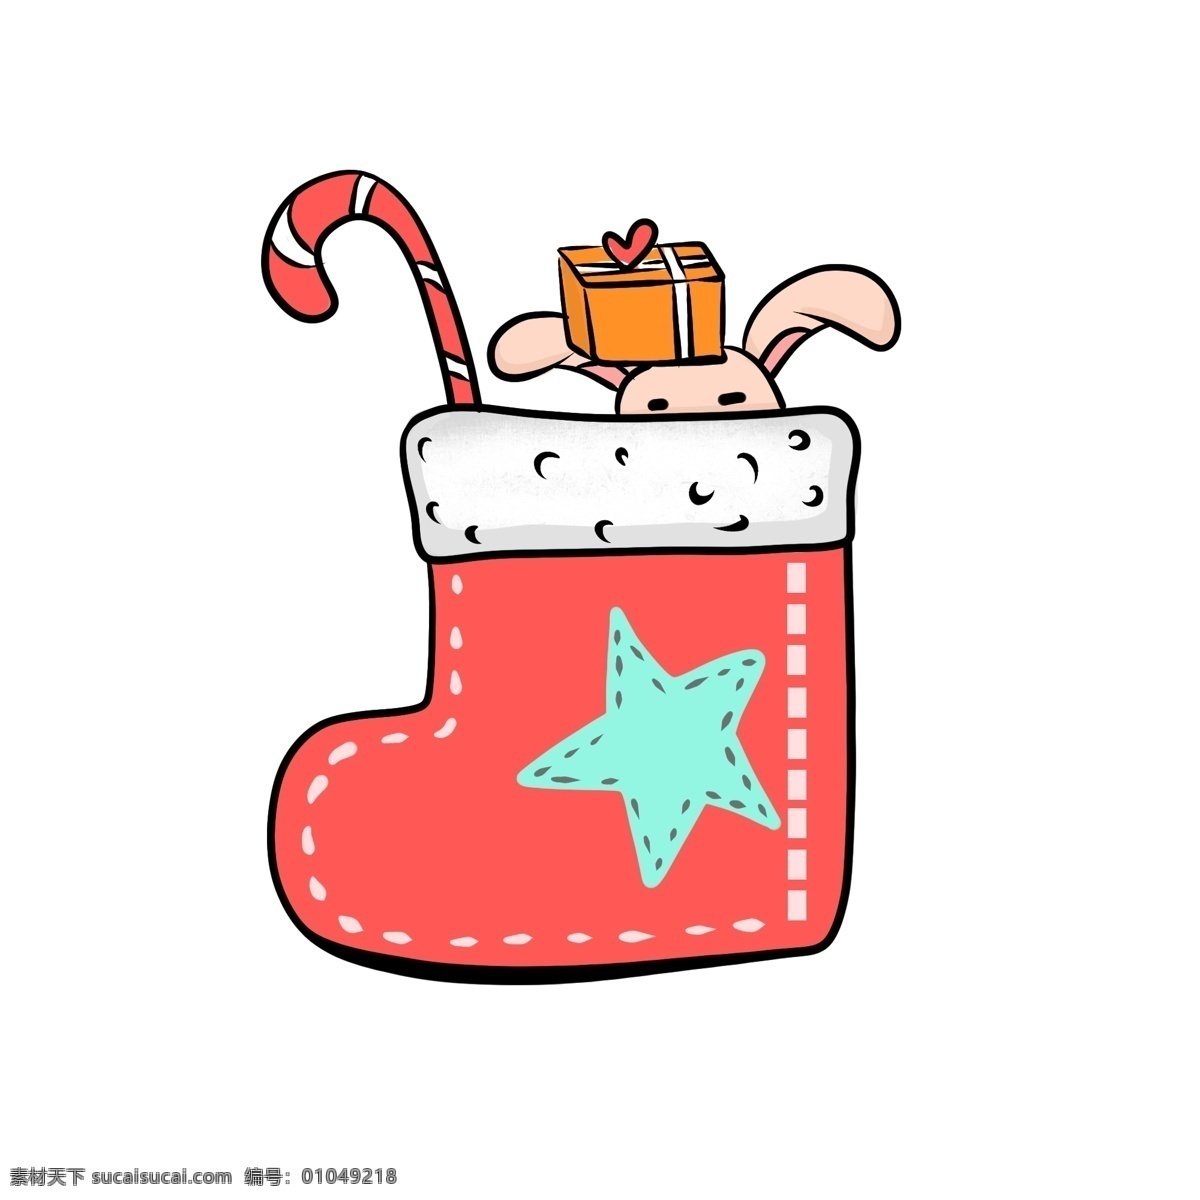 圣诞节 装满 礼物 袜子 圣诞袜 礼物盒子 玩具 兔子 拐杖 红色 星星 手绘 物品 好玩 卡通 可爱